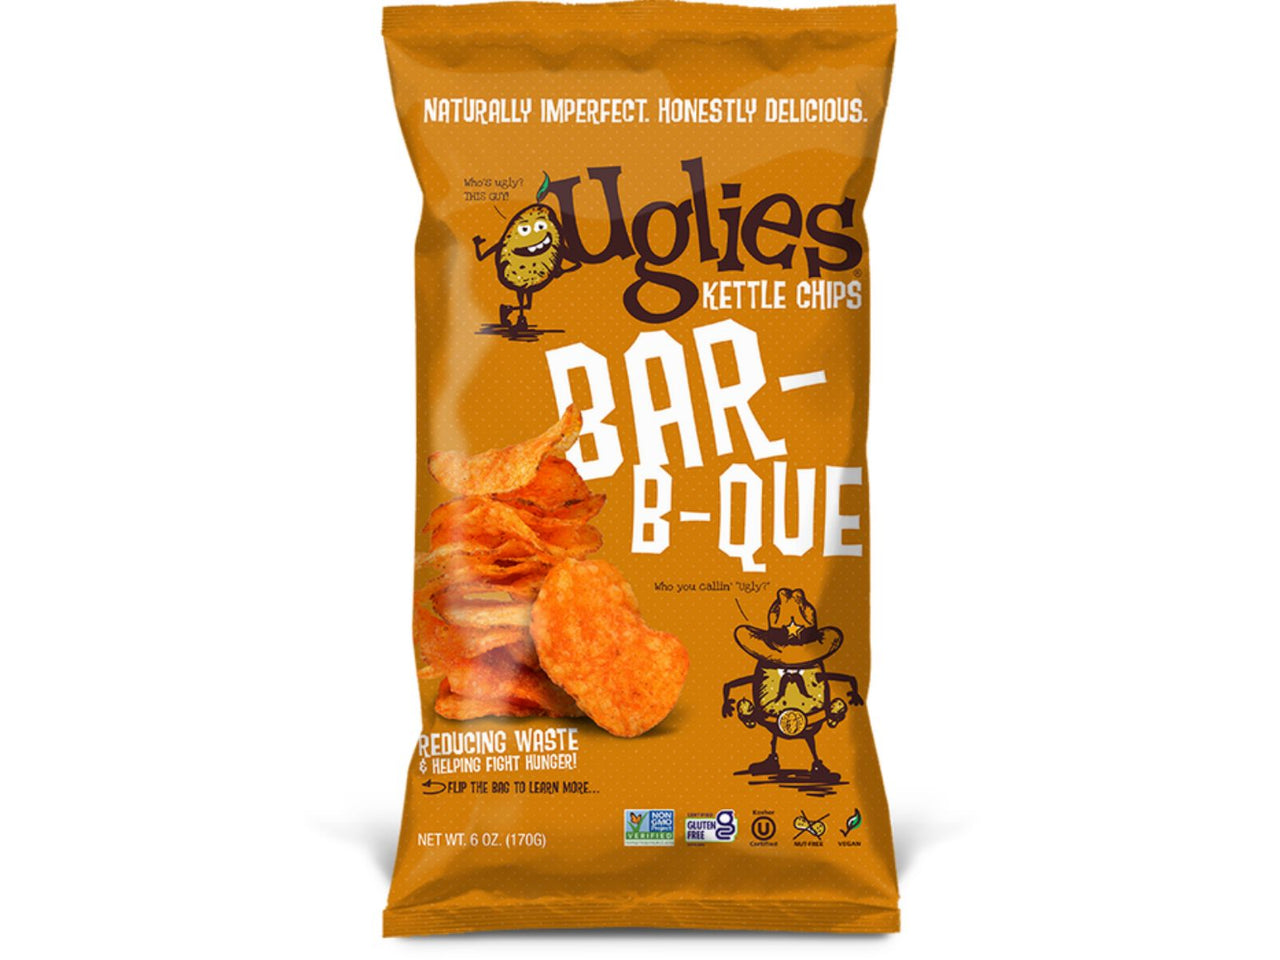 UGLIES - Mesquite BBQ 2 oz. Bags